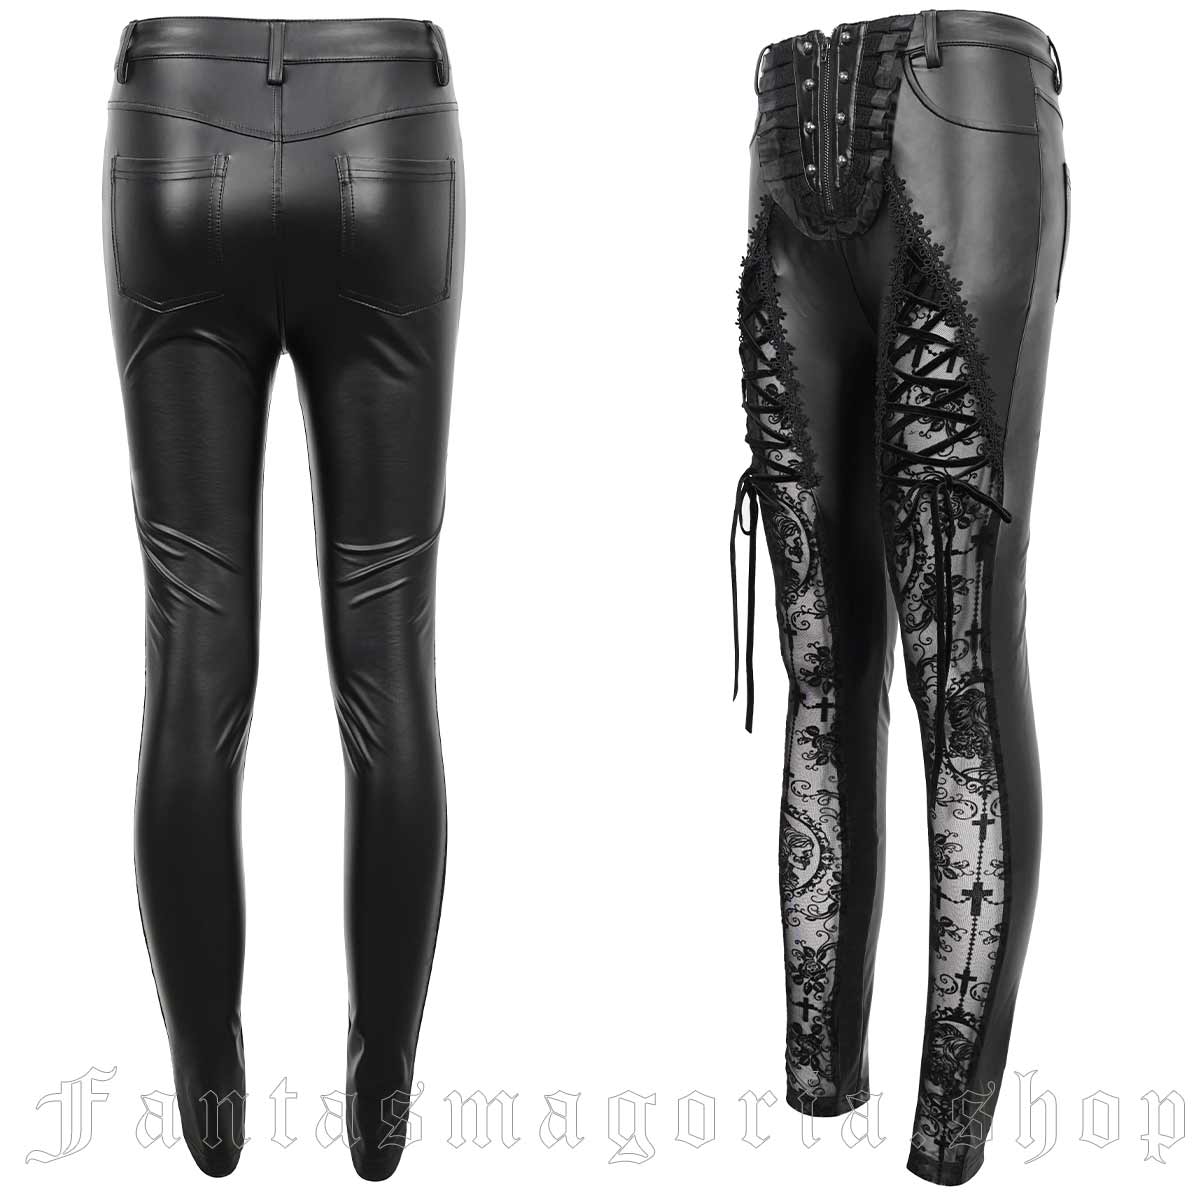 Black Gothic Buckle Belt Mesh Legging for Women  Gothic outfits, Gothic  leggings, Gothic fashion